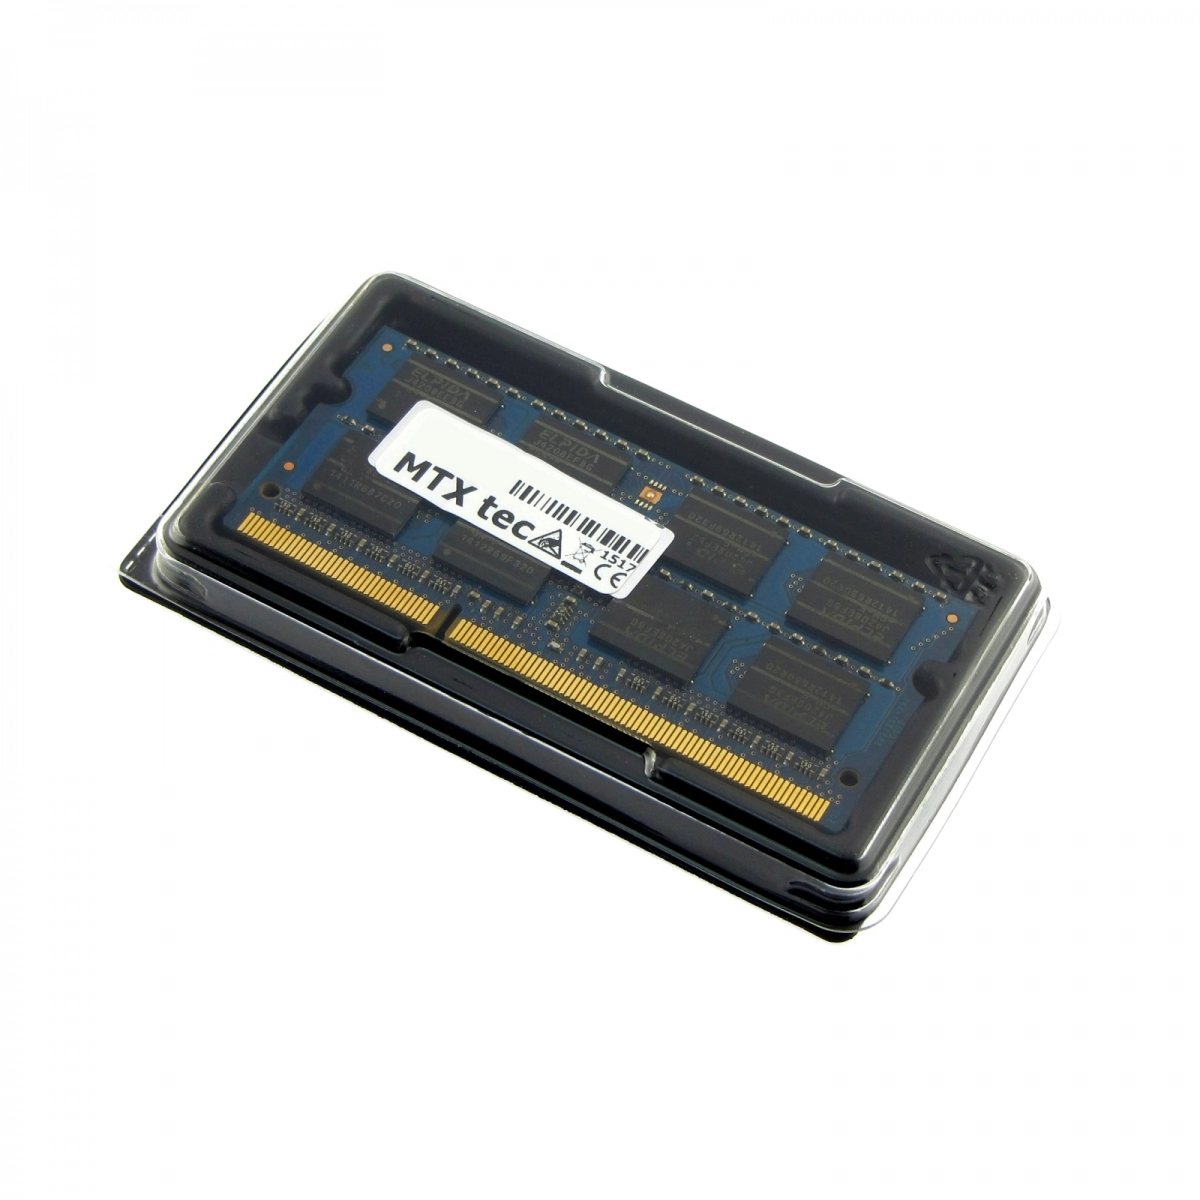 MTXtec Arbeitsspeicher 4 GB RAM für ACER Aspire 3410